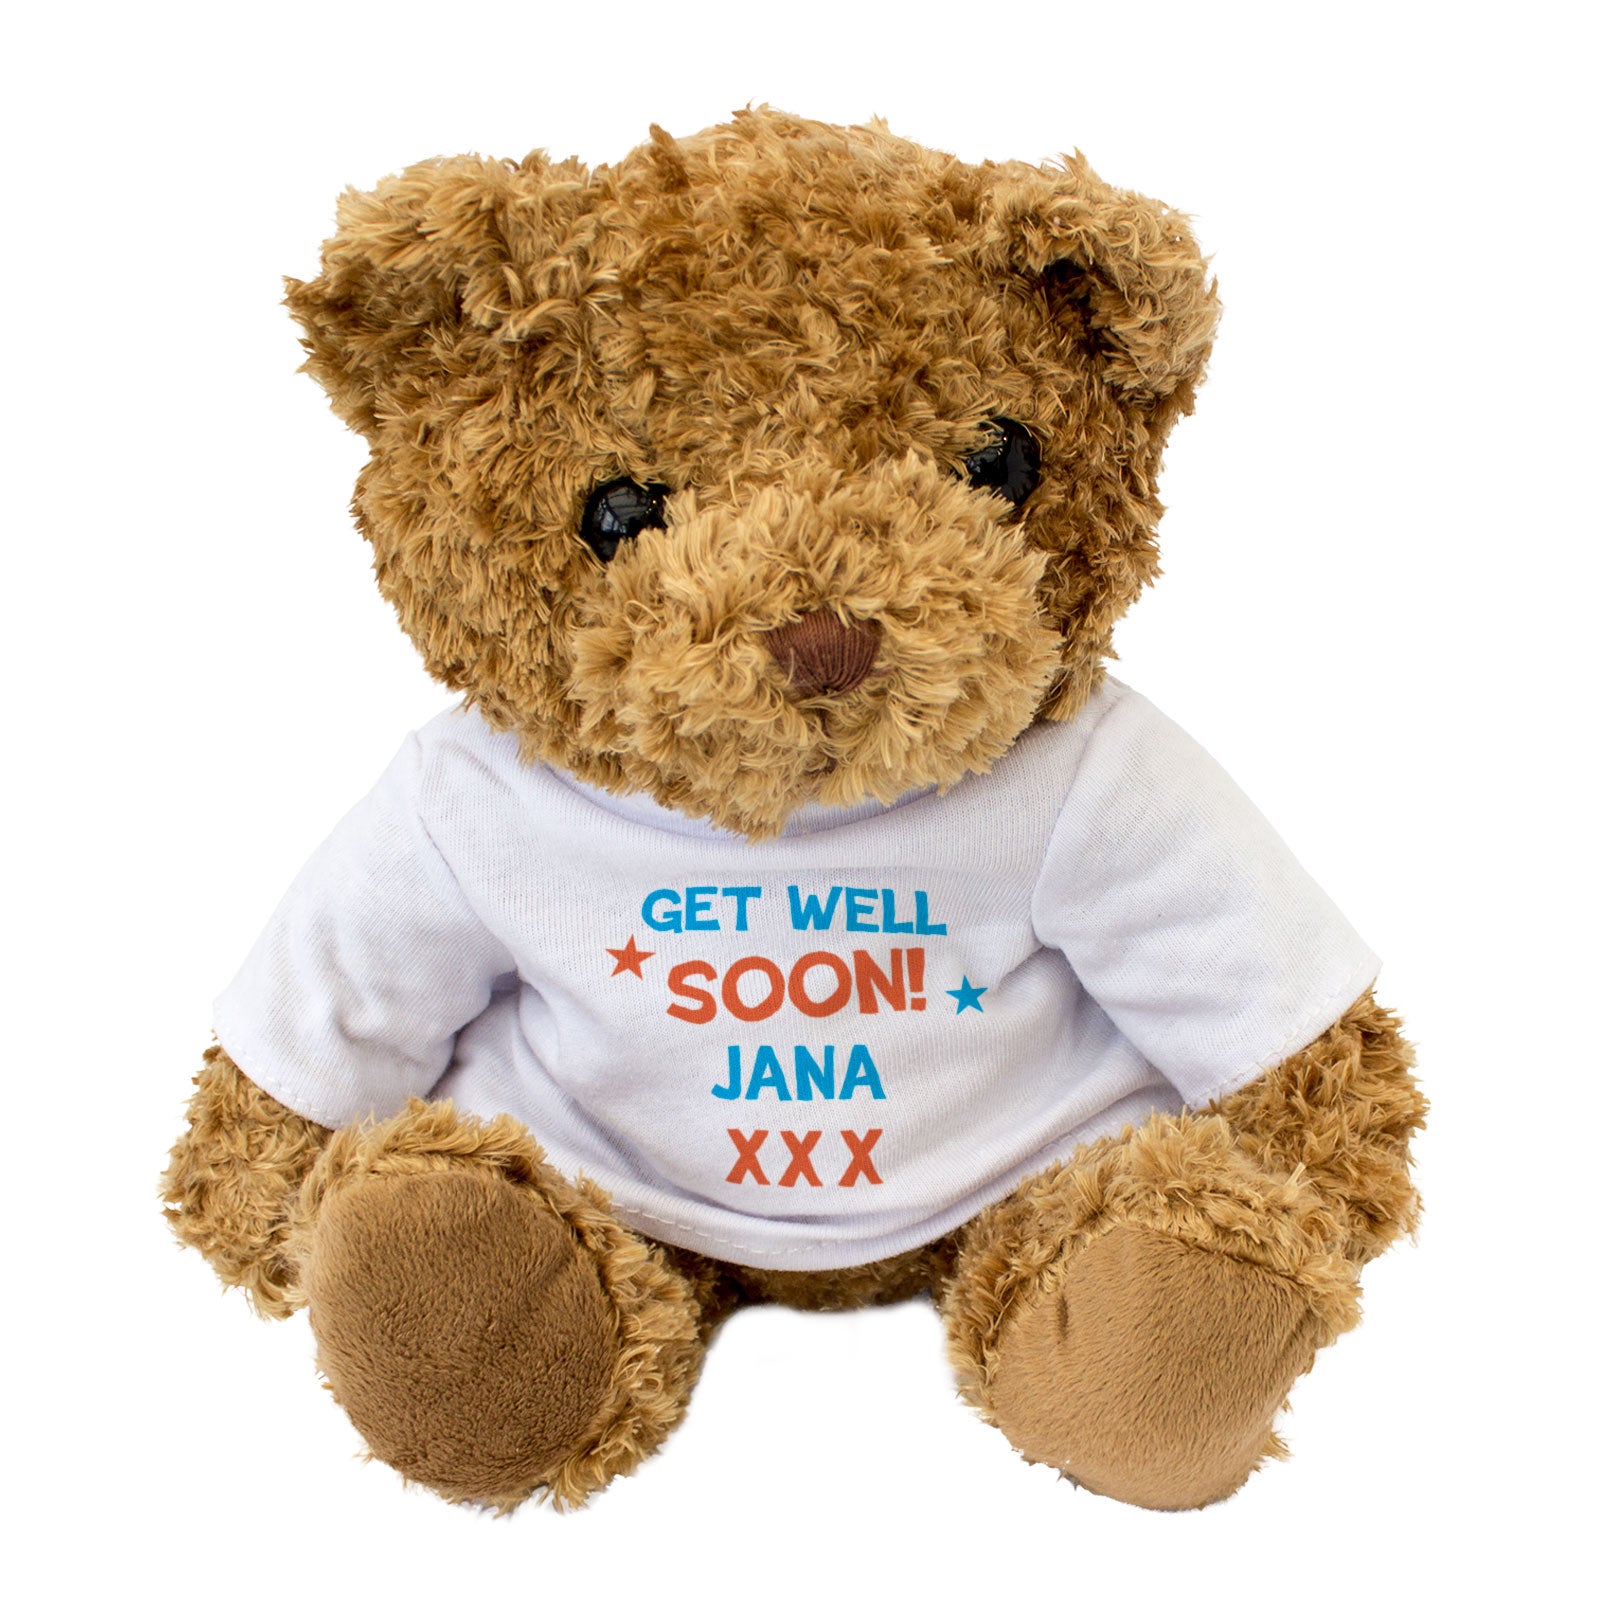 Get Well Soon Jana - Teddy Bear